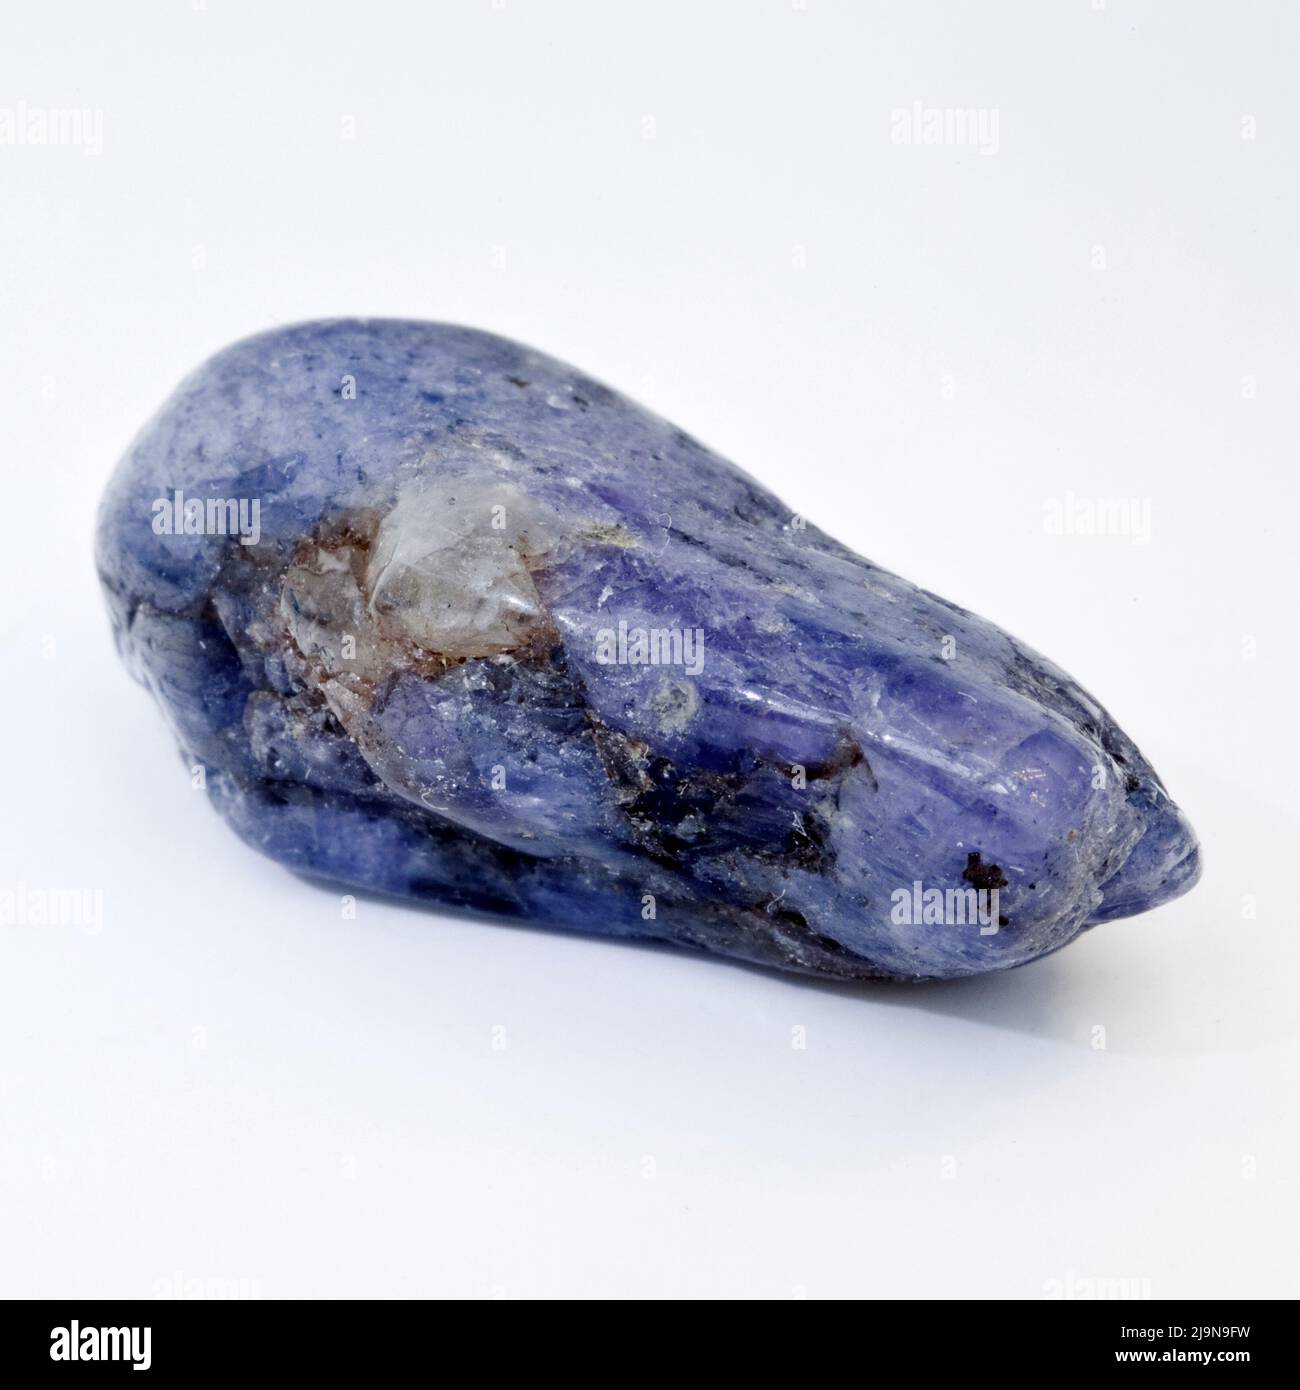 Macro primer plano fotografía en color de un 'zafiro' pulido Una piedra preciosa semi-cristal utilizada en la terapia de curación de cristales Foto de stock